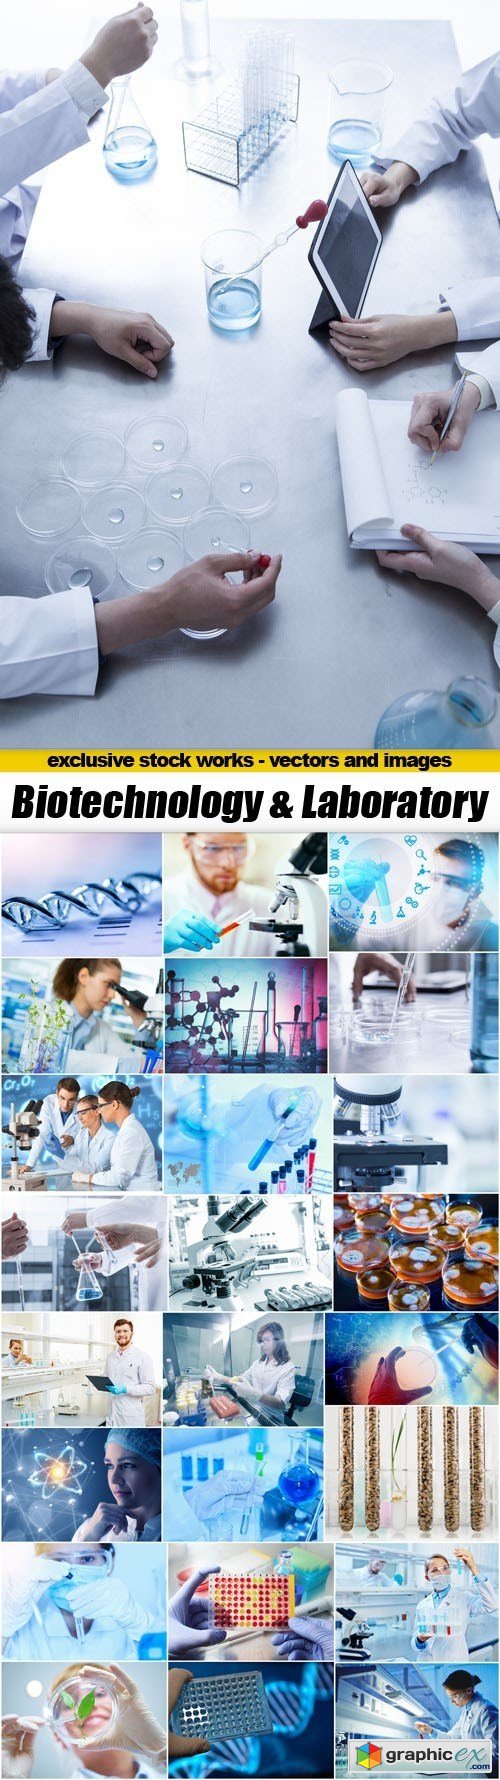 Biotechnology & Laboratory - 25xUHQ JPEG